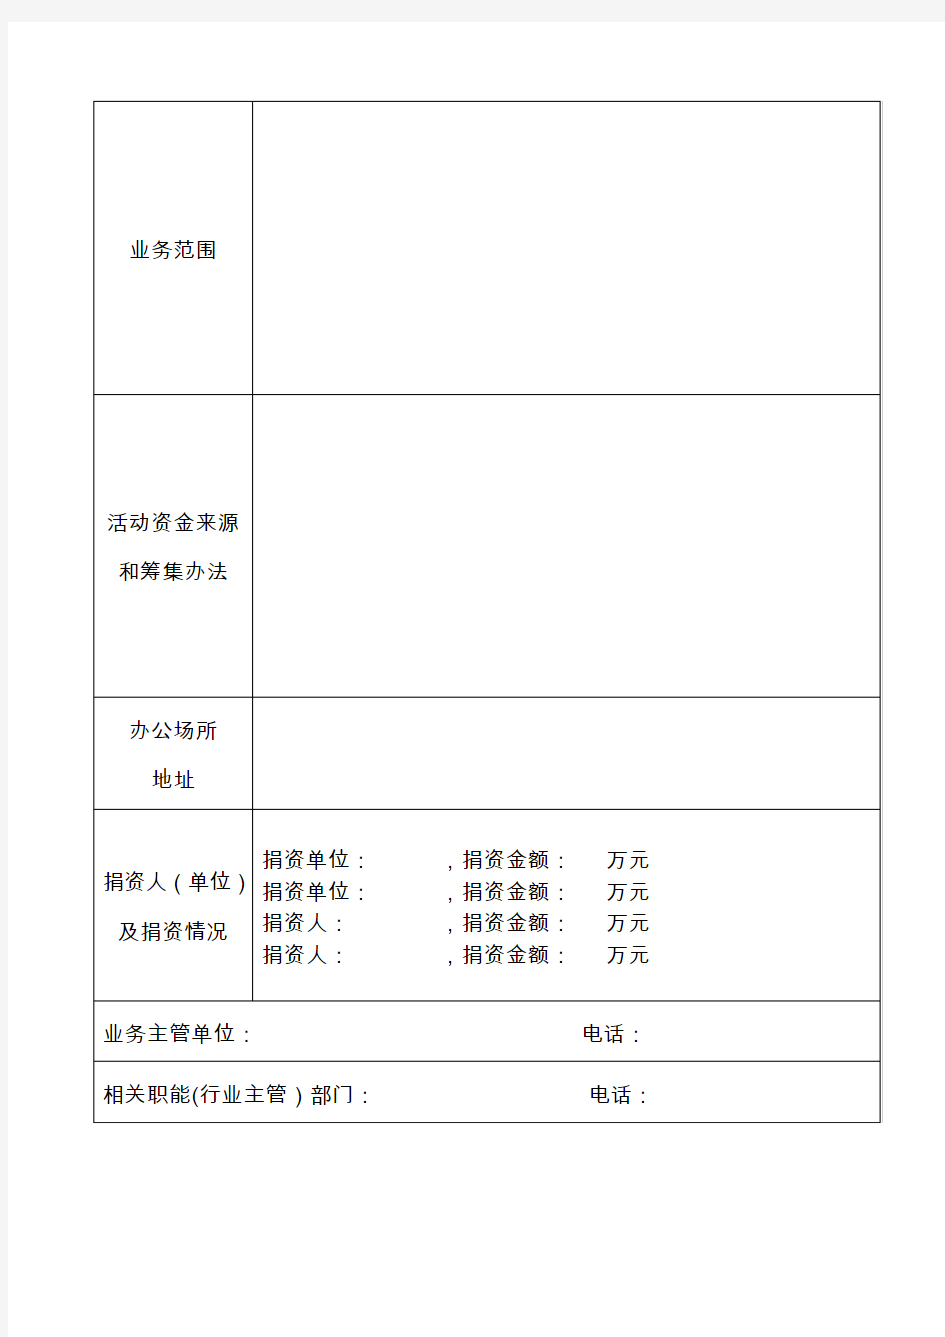 社会团体名称预先核准申请表-广西社会组织